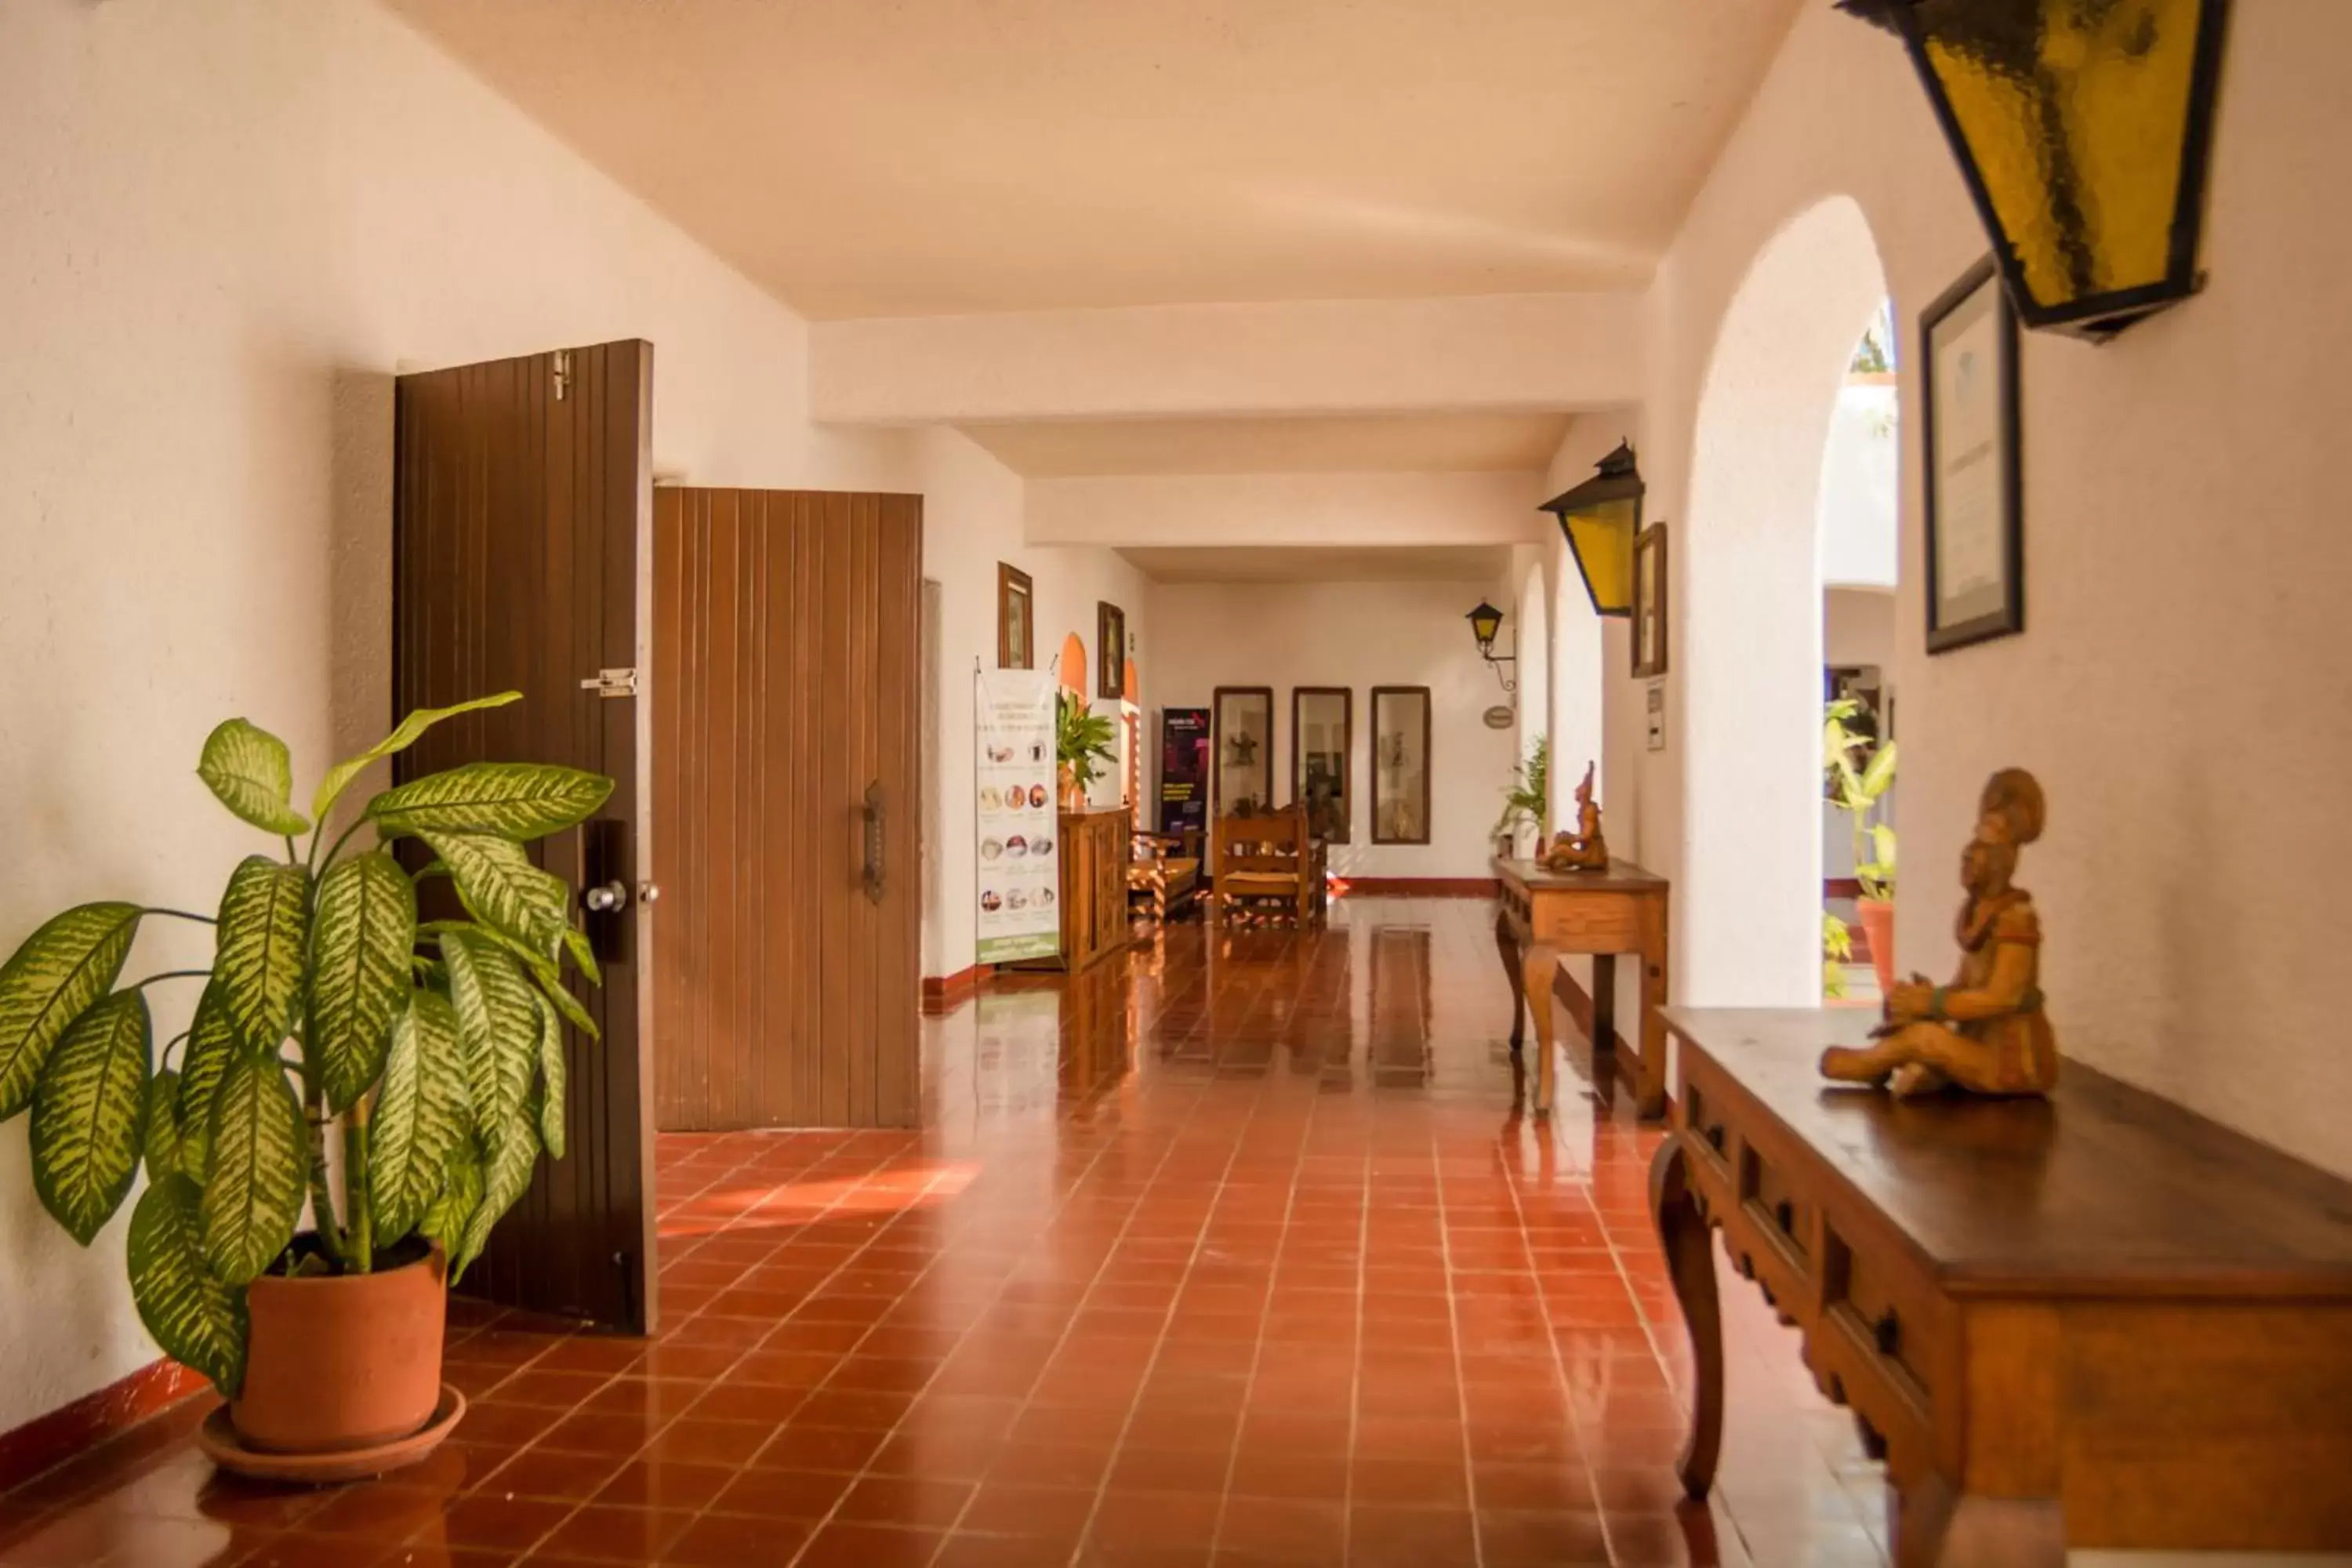 Lobby or reception, Lobby/Reception in Villas Arqueologicas Chichen Itza